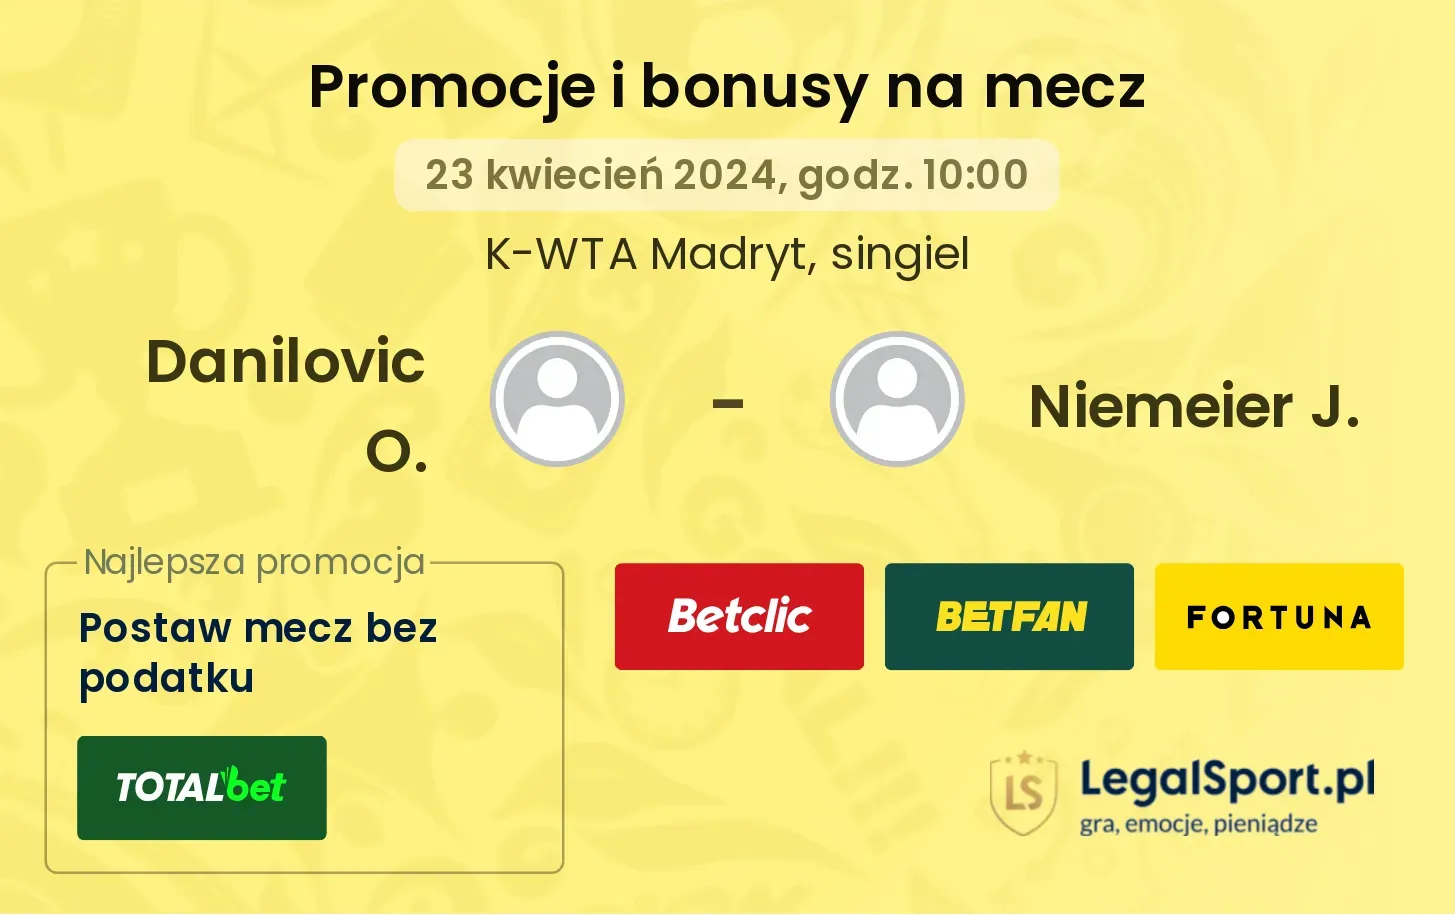 Danilovic O. - Niemeier J. promocje bonusy na mecz